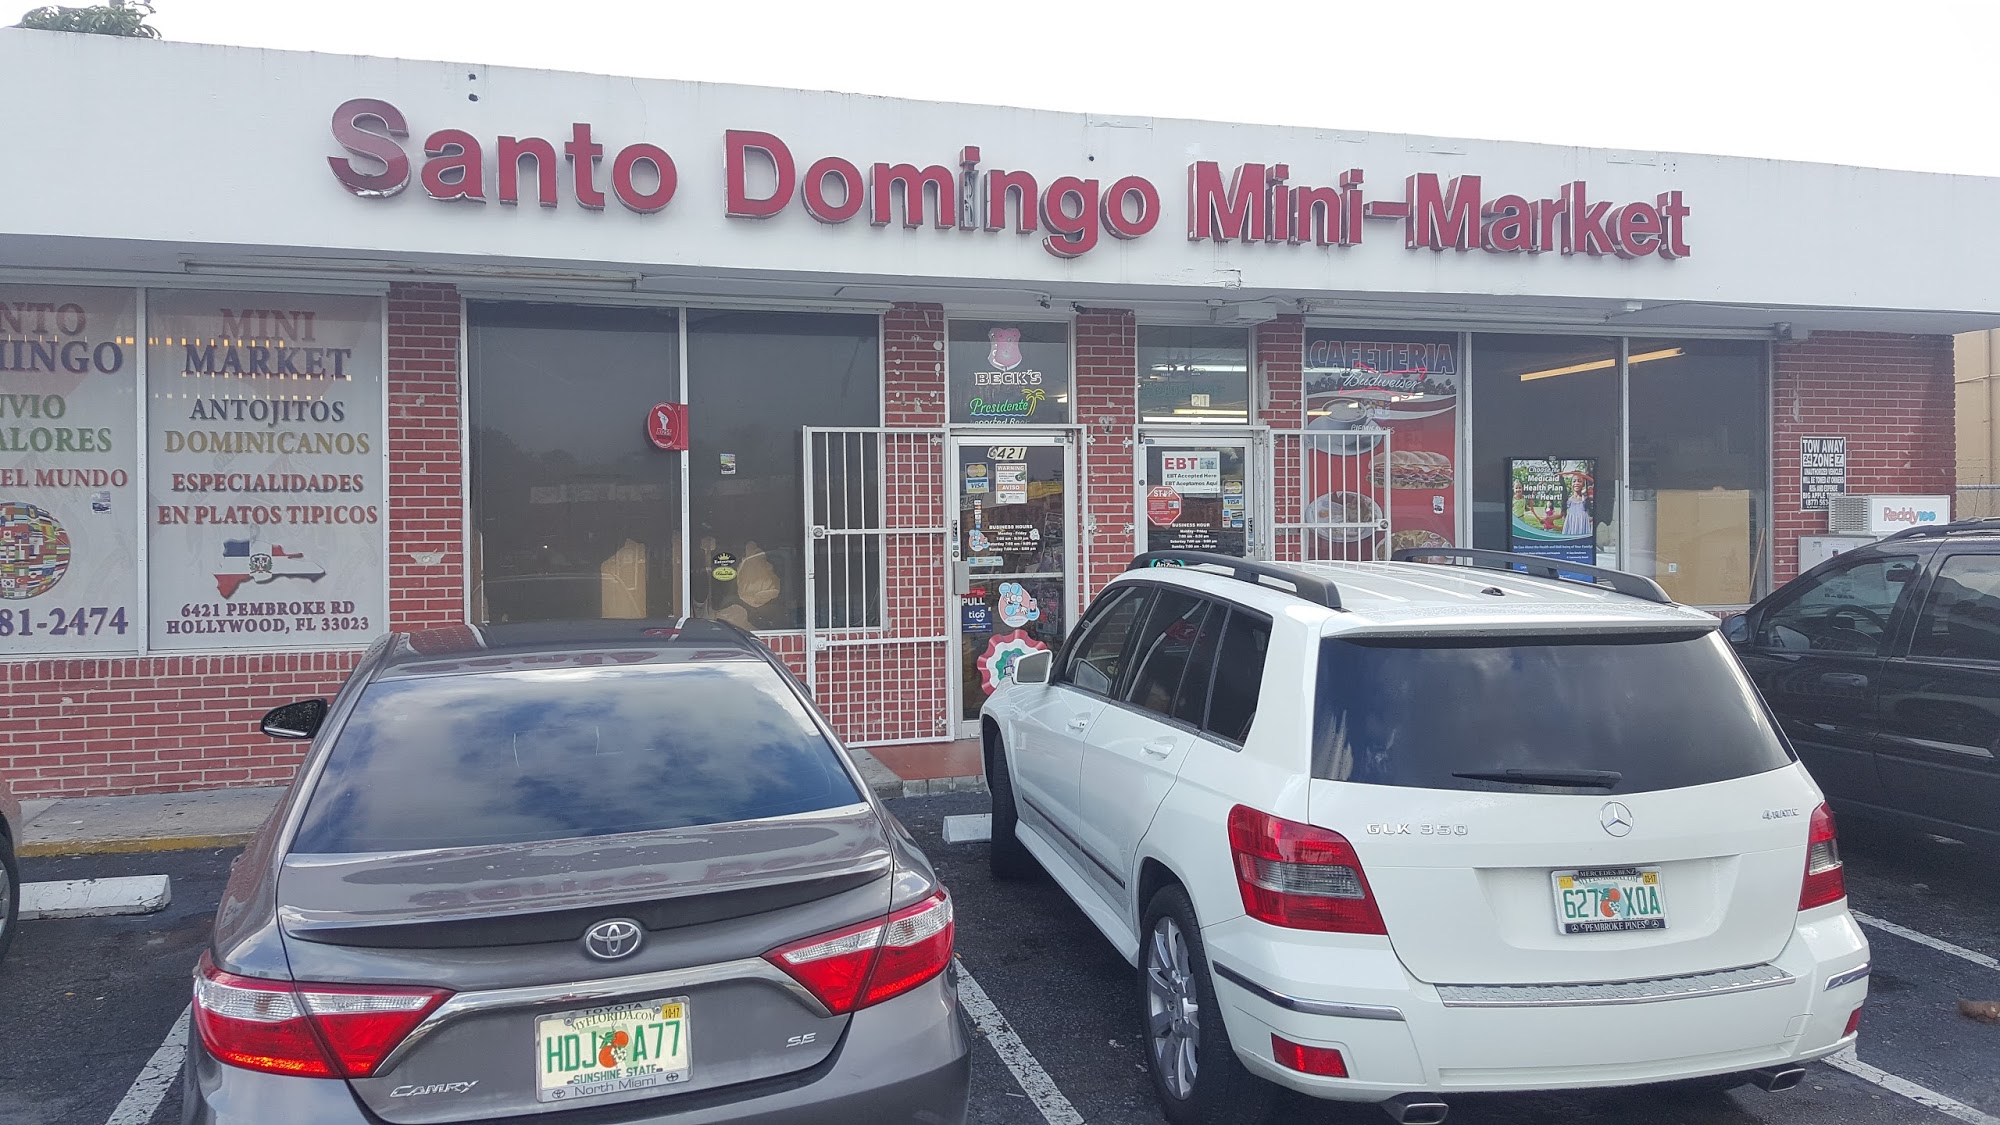 Santo Domingo Mini Market Enterprise, Inc